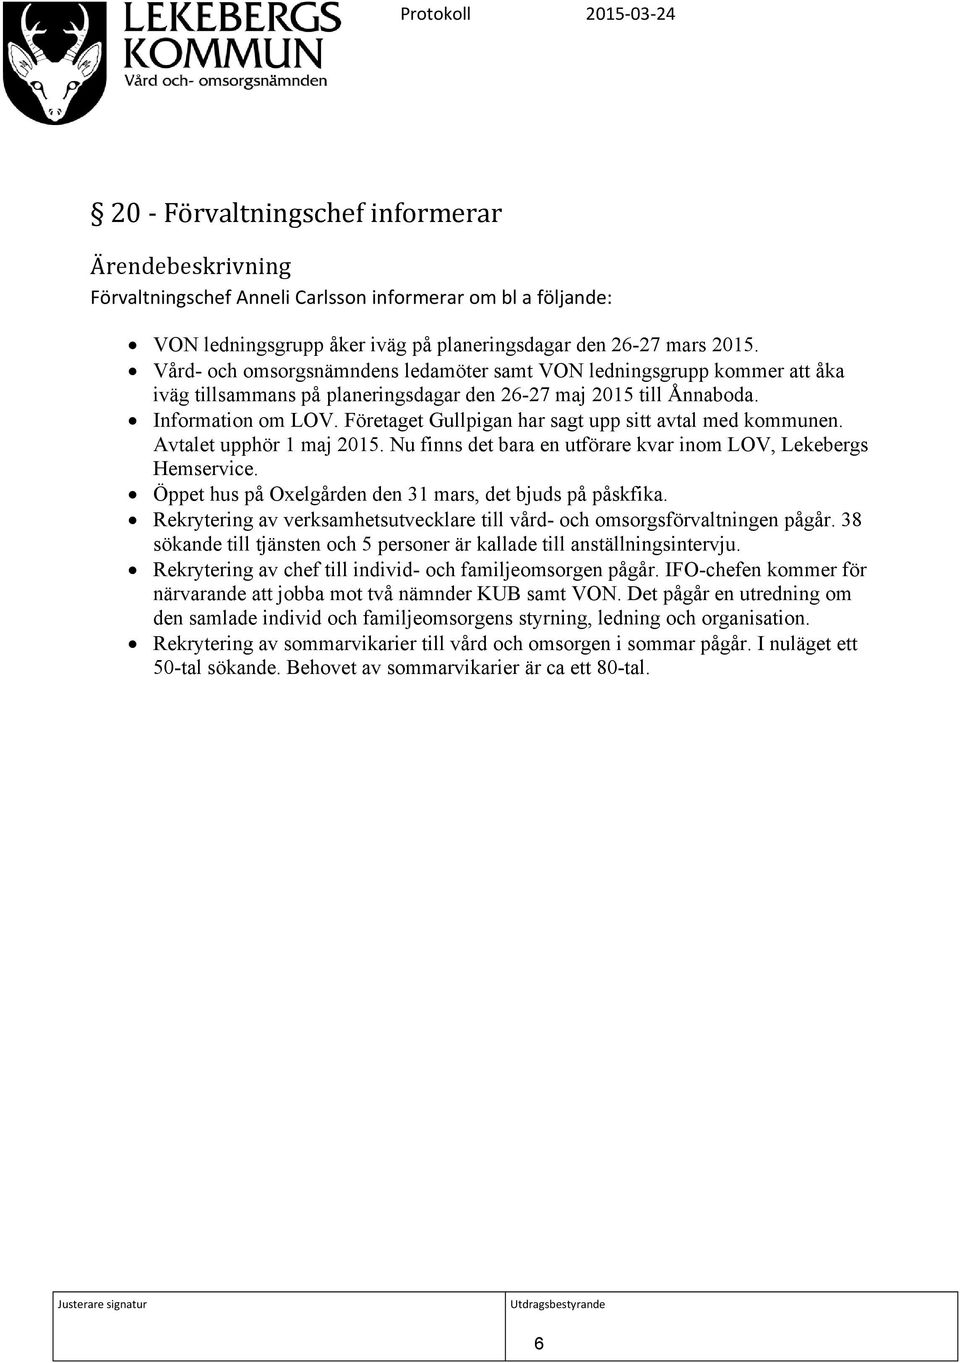 Företaget Gullpigan har sagt upp sitt avtal med kommunen. Avtalet upphör 1 maj 2015. Nu finns det bara en utförare kvar inom LOV, Lekebergs Hemservice.